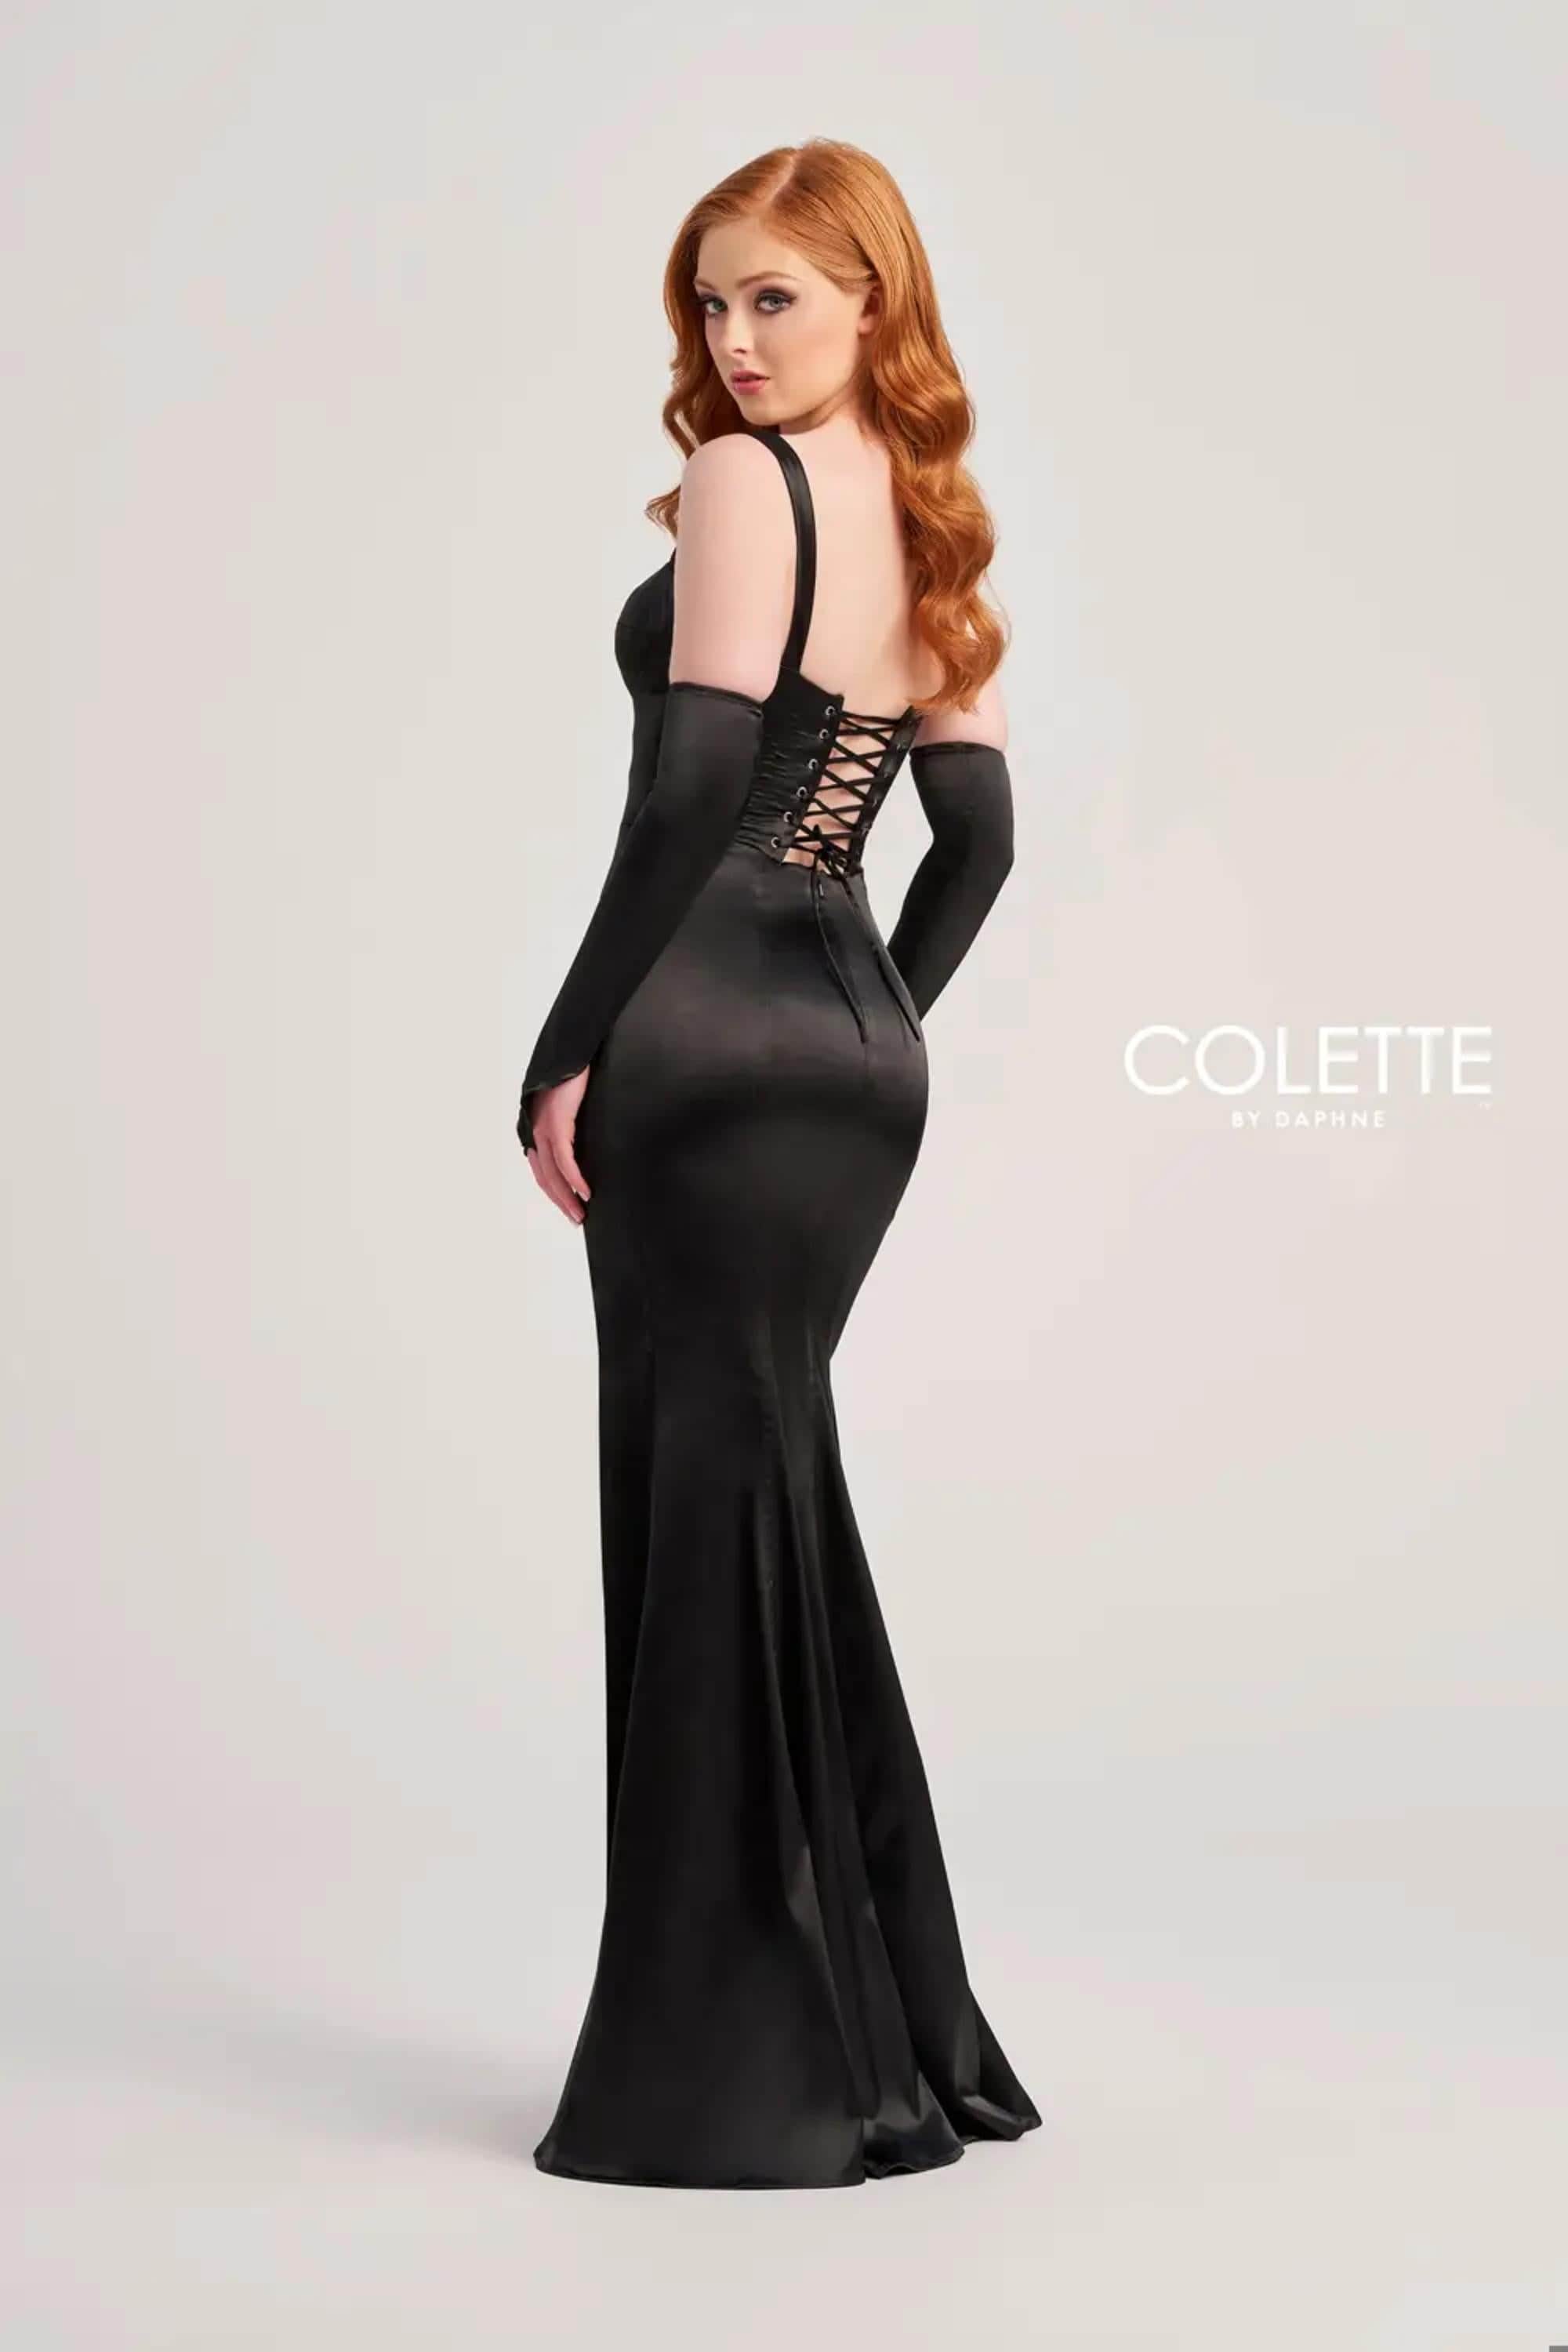 Colette By Daphne, Colette By Daphne CL5252 - Satin Corset Prom Dress